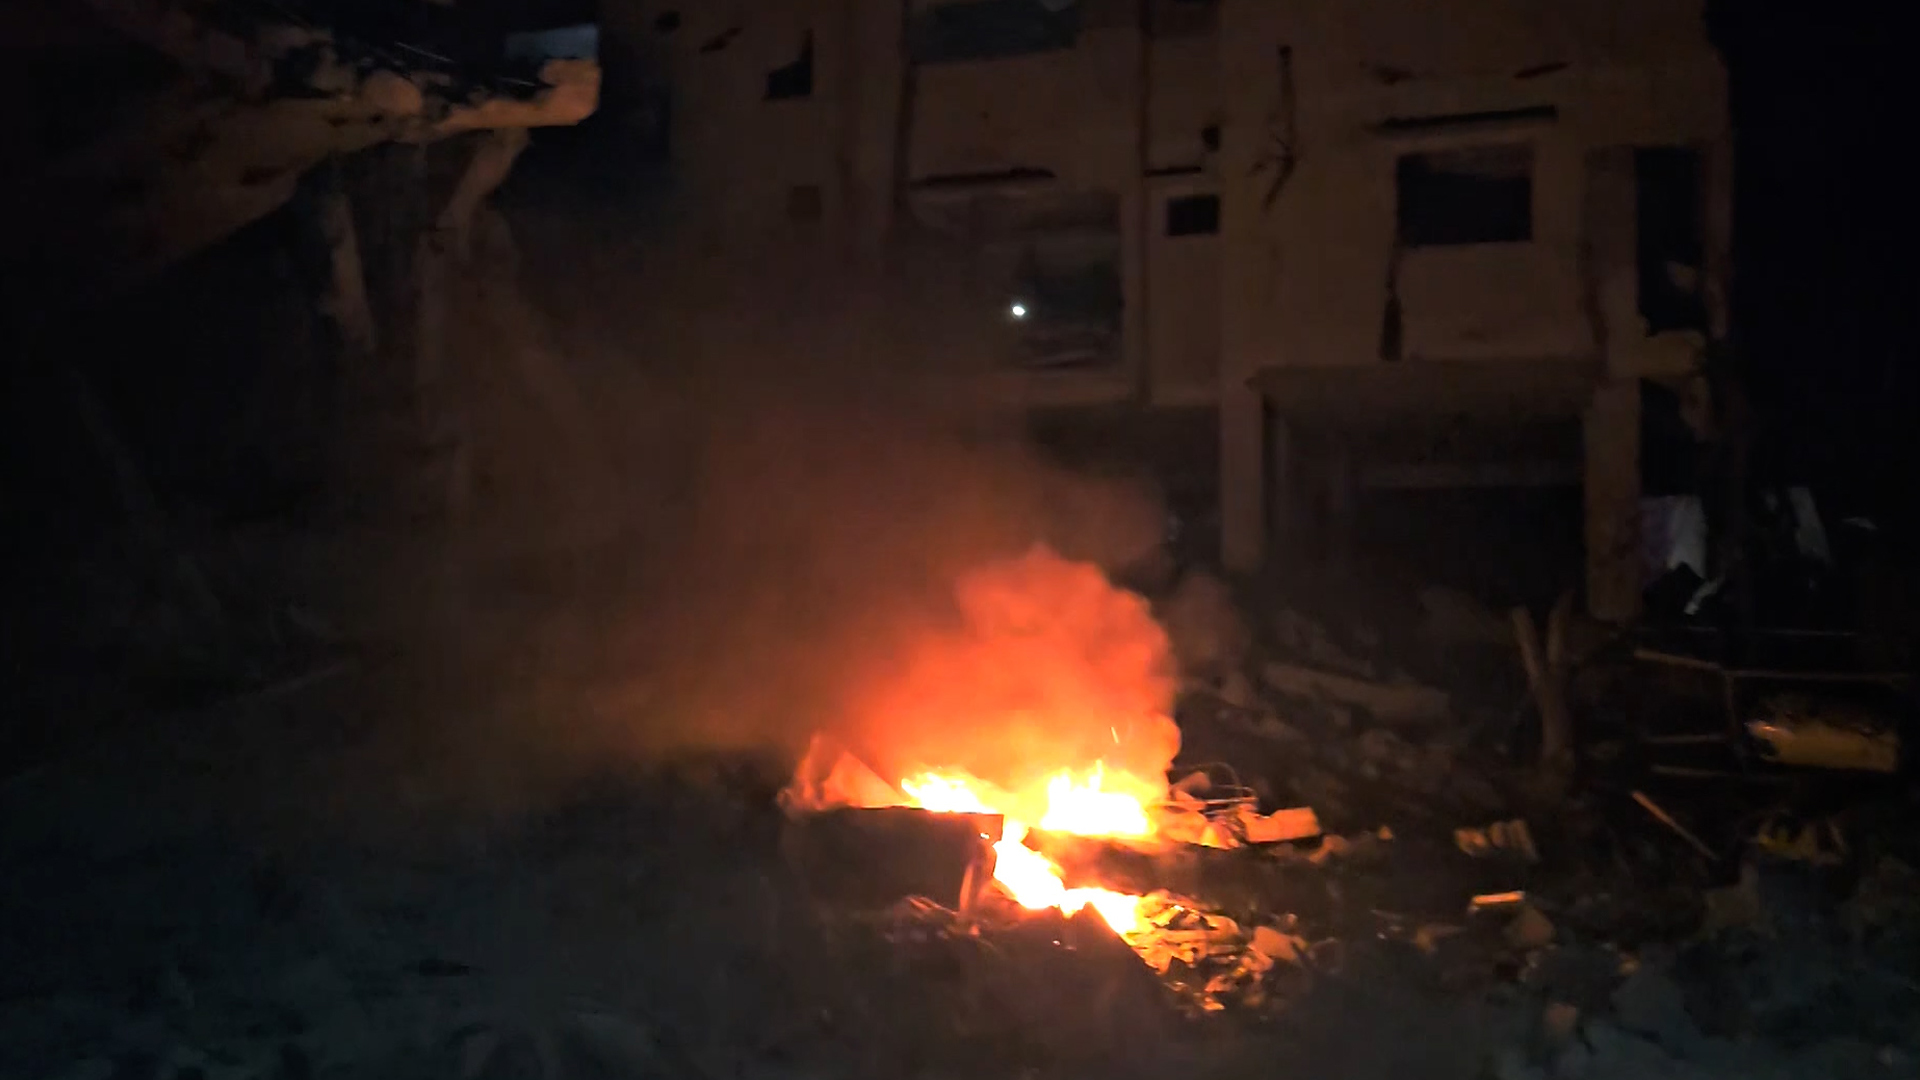 شاهد.. الاحتلال يقصف منزل عائلة أبو عطوان بمخيم النصيرات للمرة الثانية | البرامج – البوكس نيوز